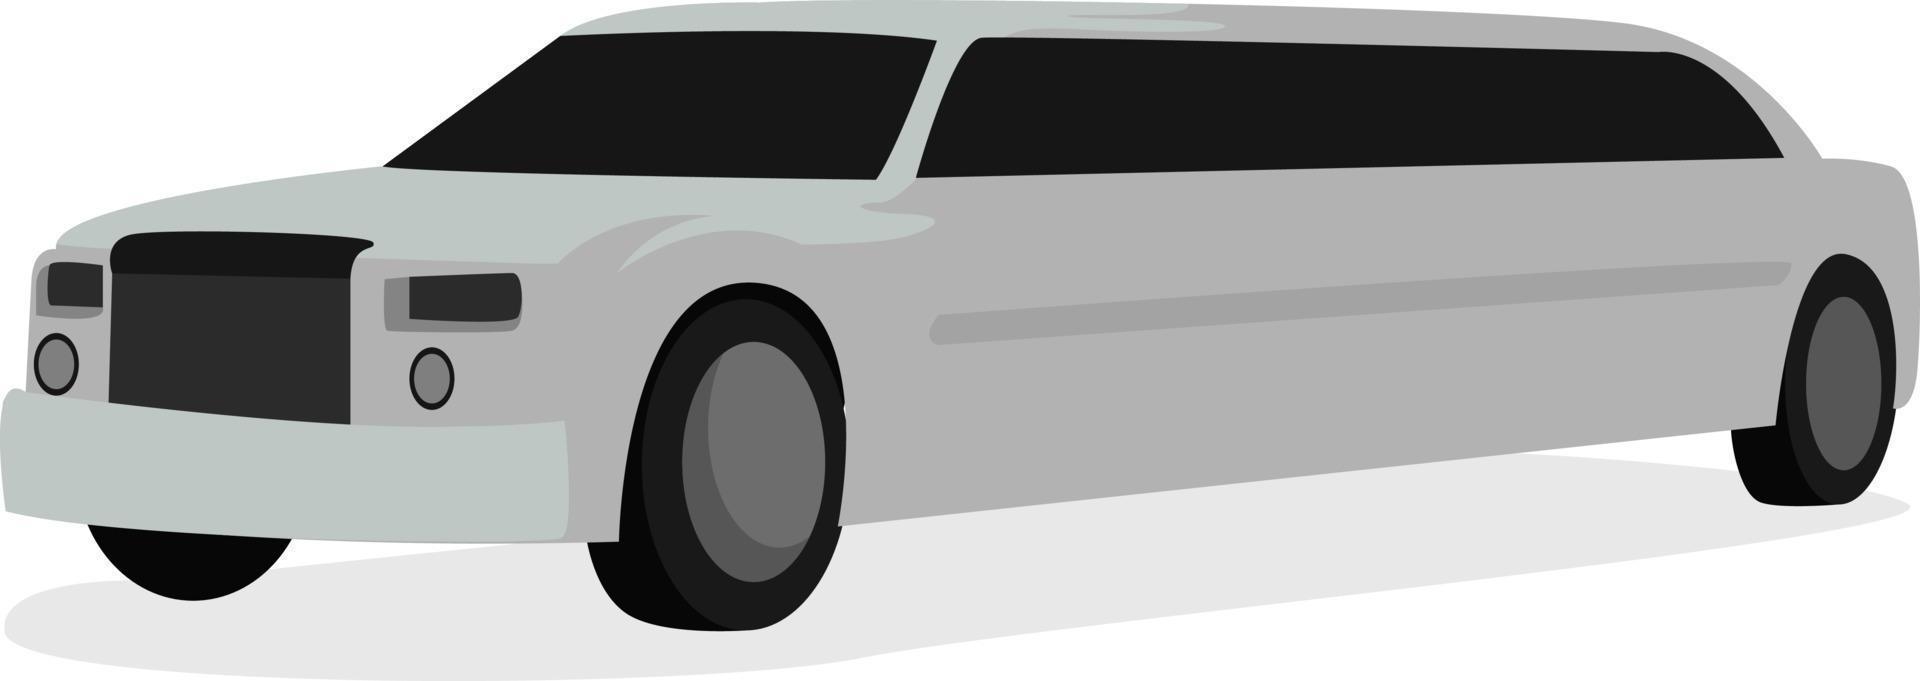 bianca limousine, illustrazione, vettore su bianca sfondo